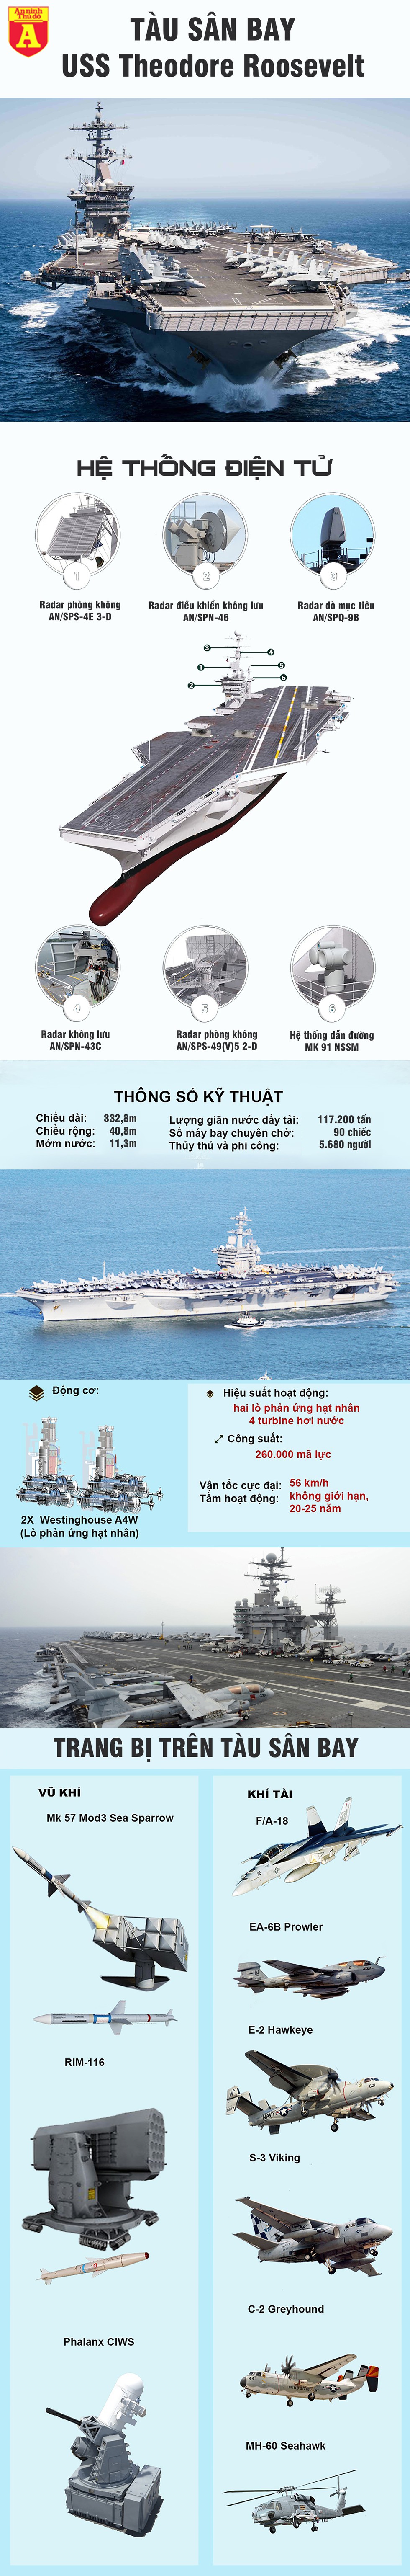 [Infographics] Tàu sân bay USS Theodore Roosevelt trước nguy cơ trở thành ổ dịch Covid-19 - Ảnh 1